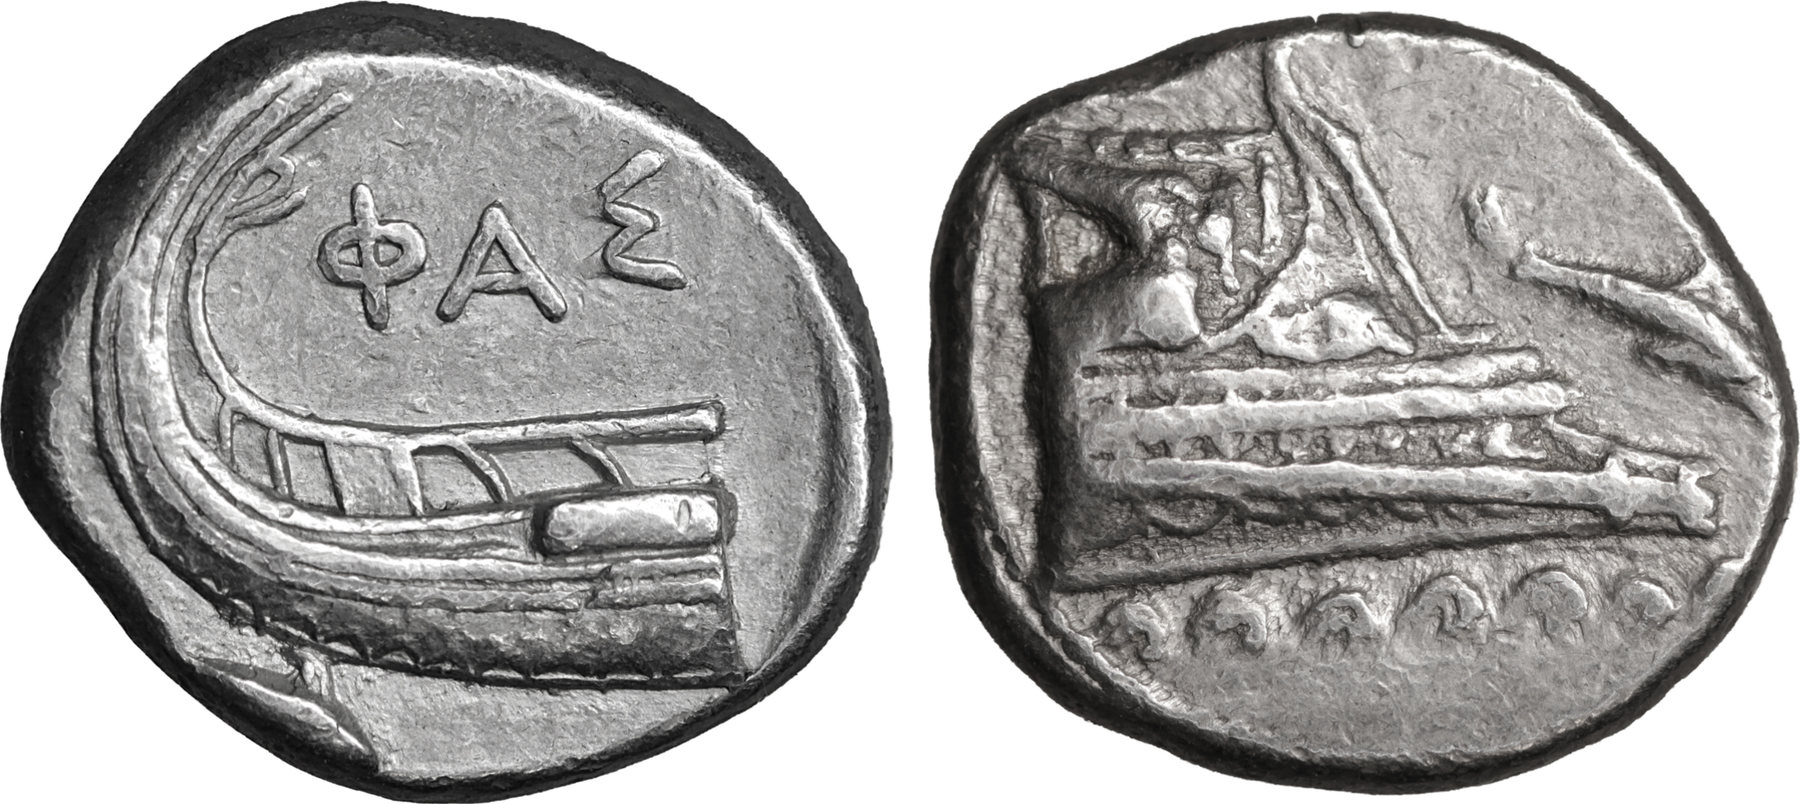 Киш монета. Фаселис античная монета. Монеты города Фаселиса. Монеты Ликии Фаселис. Статер монета с изображением на реверсе козла.